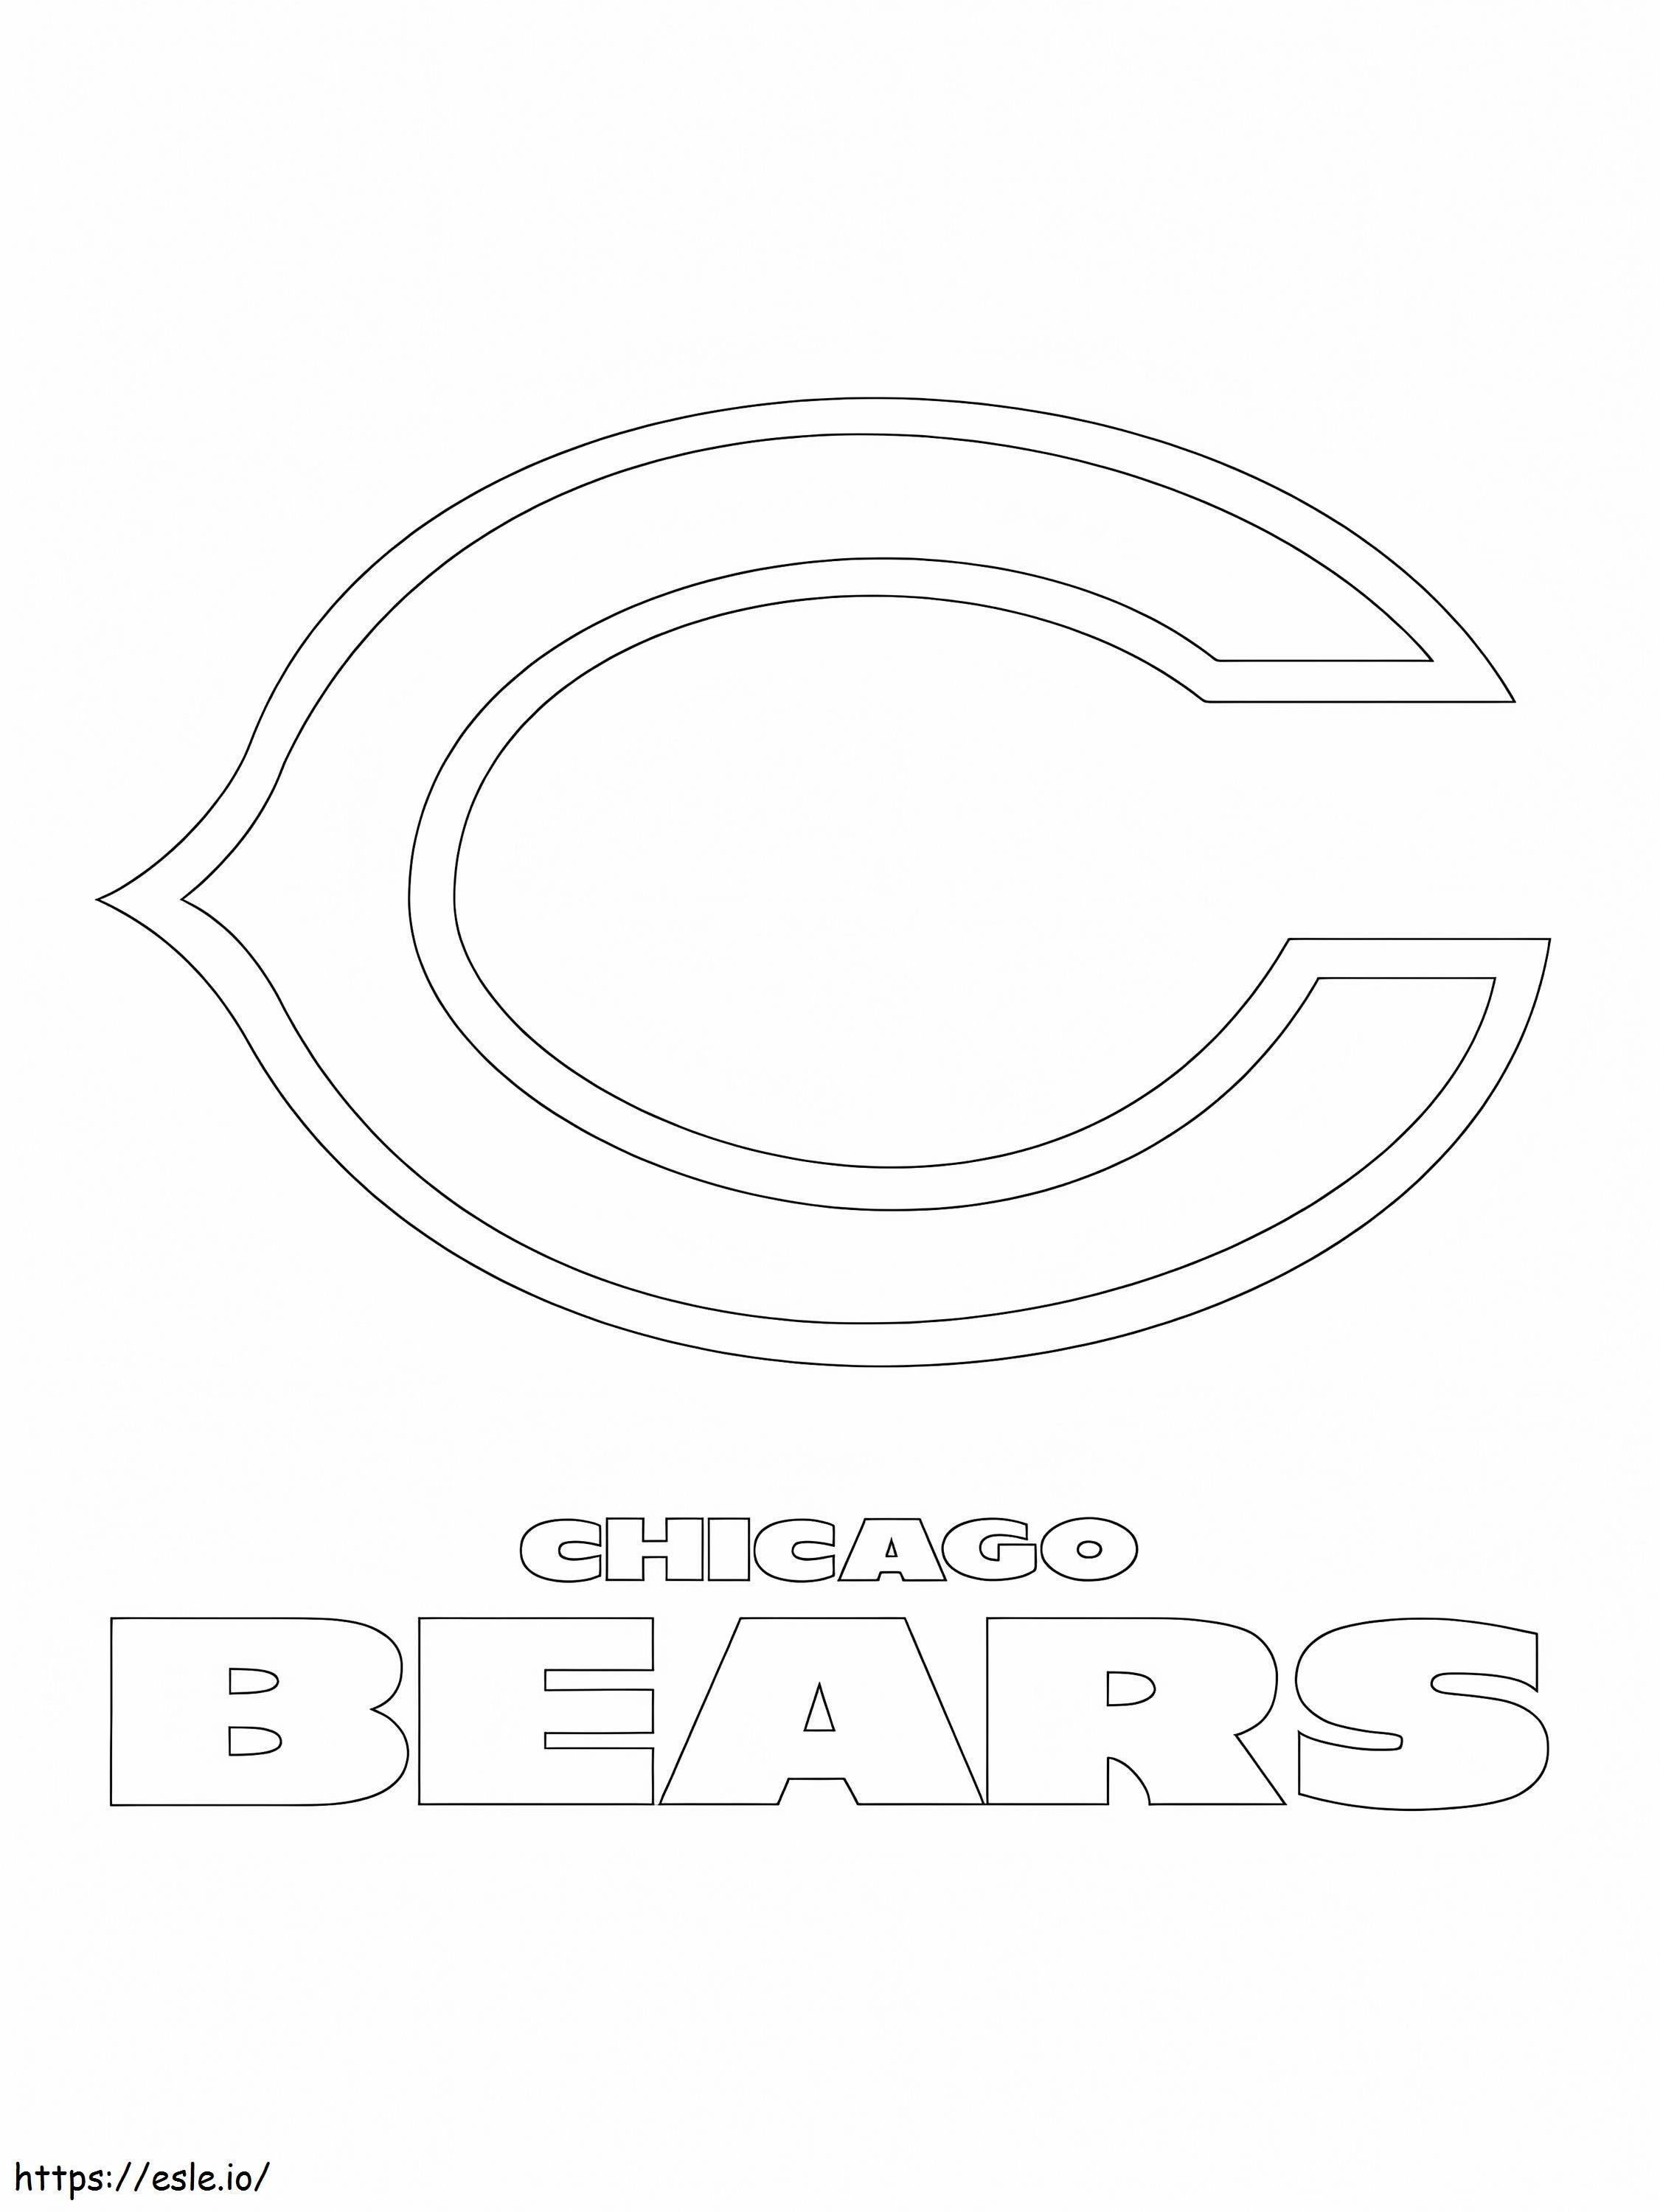 Logo Niedźwiedzi Chicagowskich kolorowanka